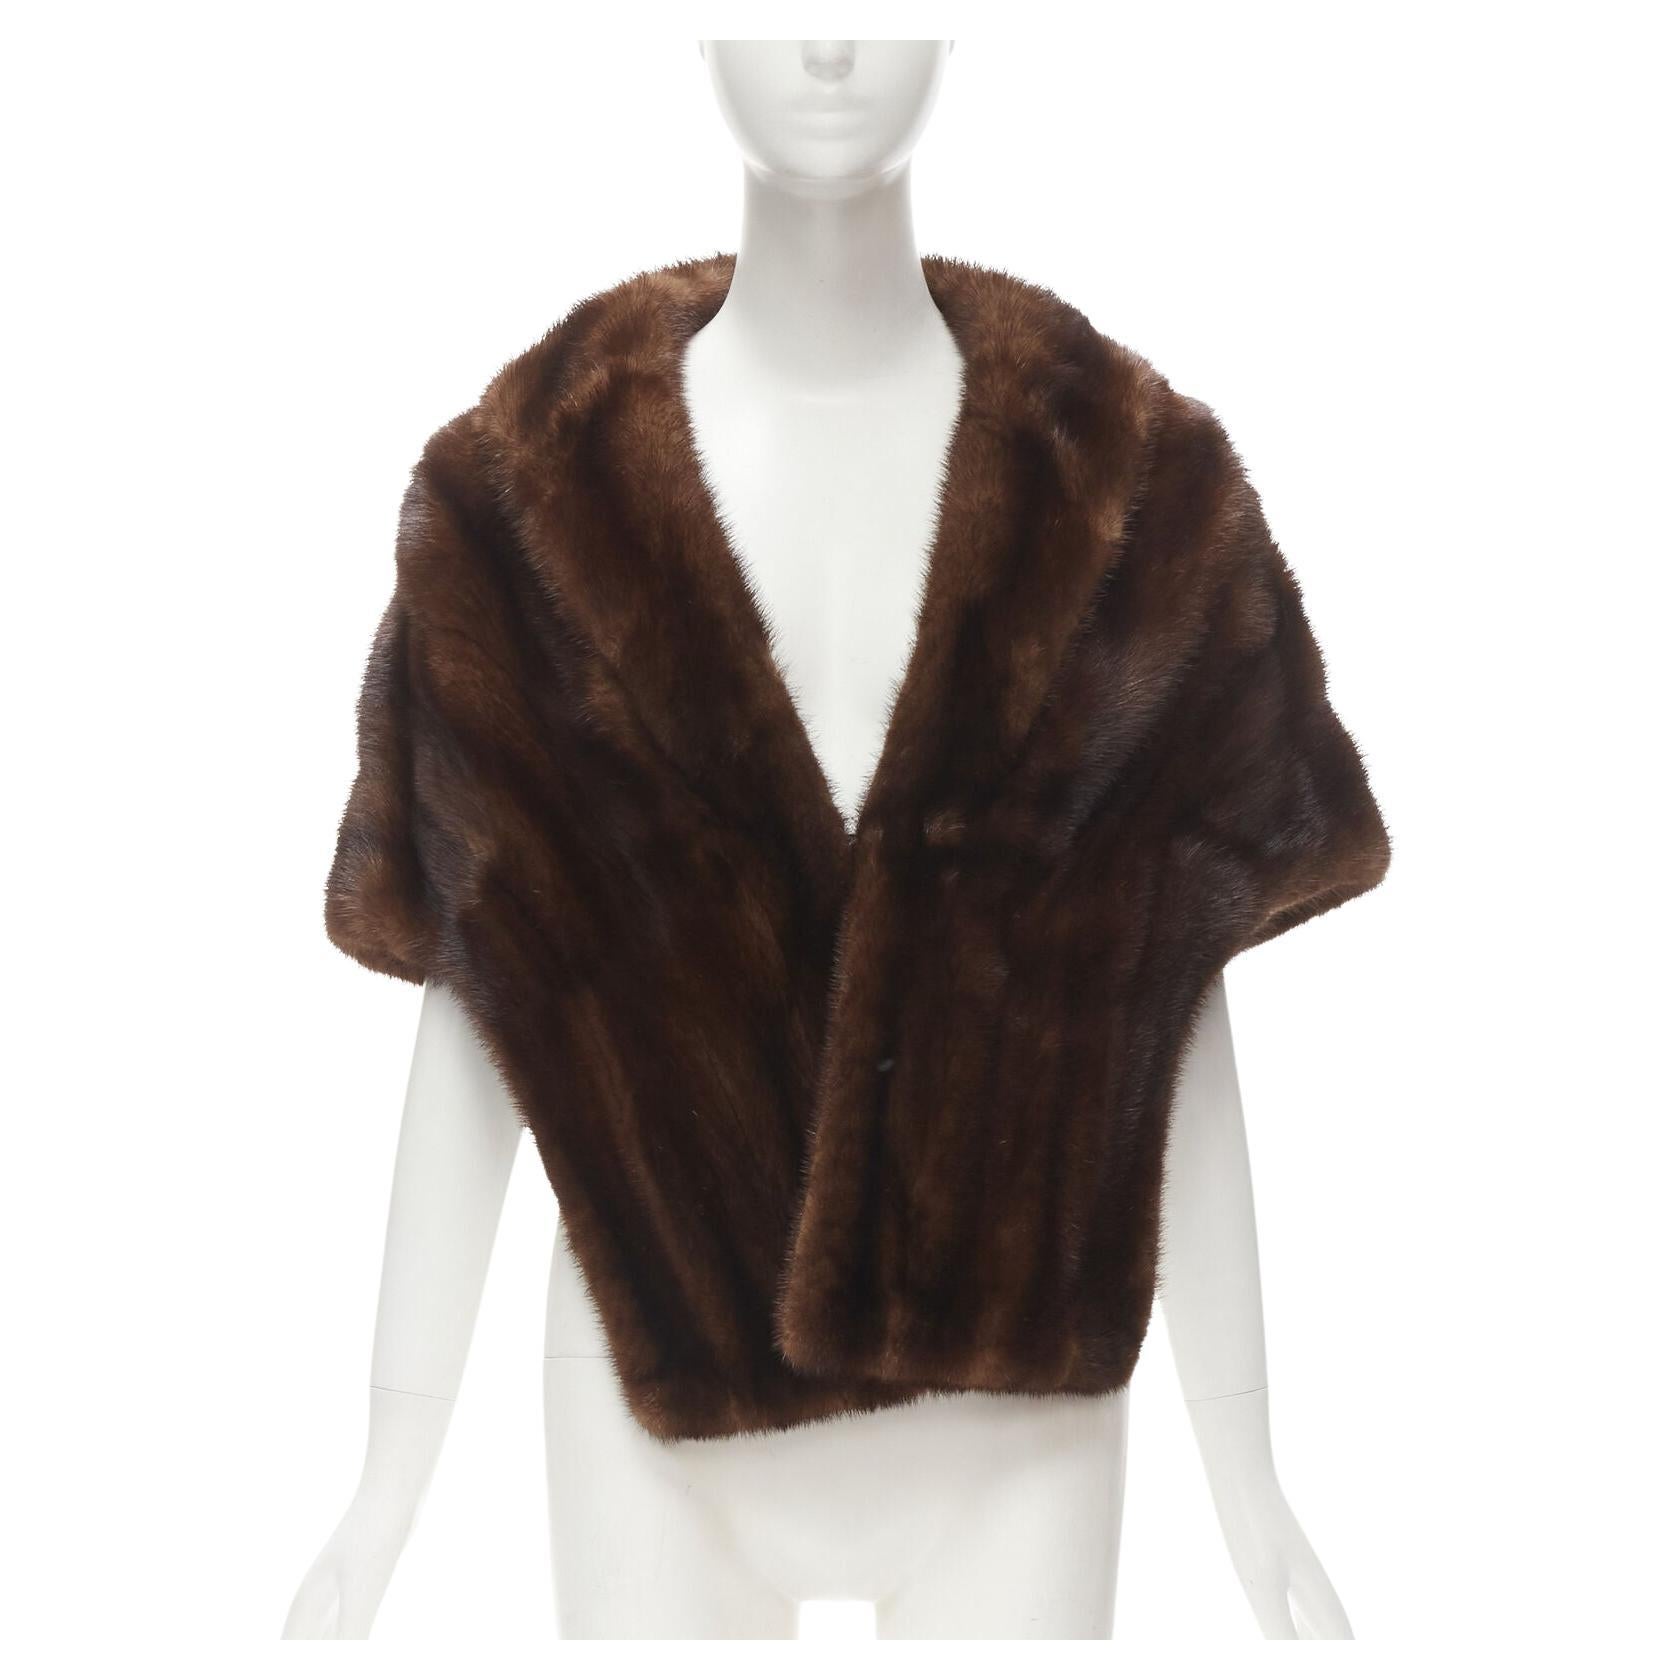 UNLABELLED brown mink fur shoulder shawl scarf hook eye closure For Sale